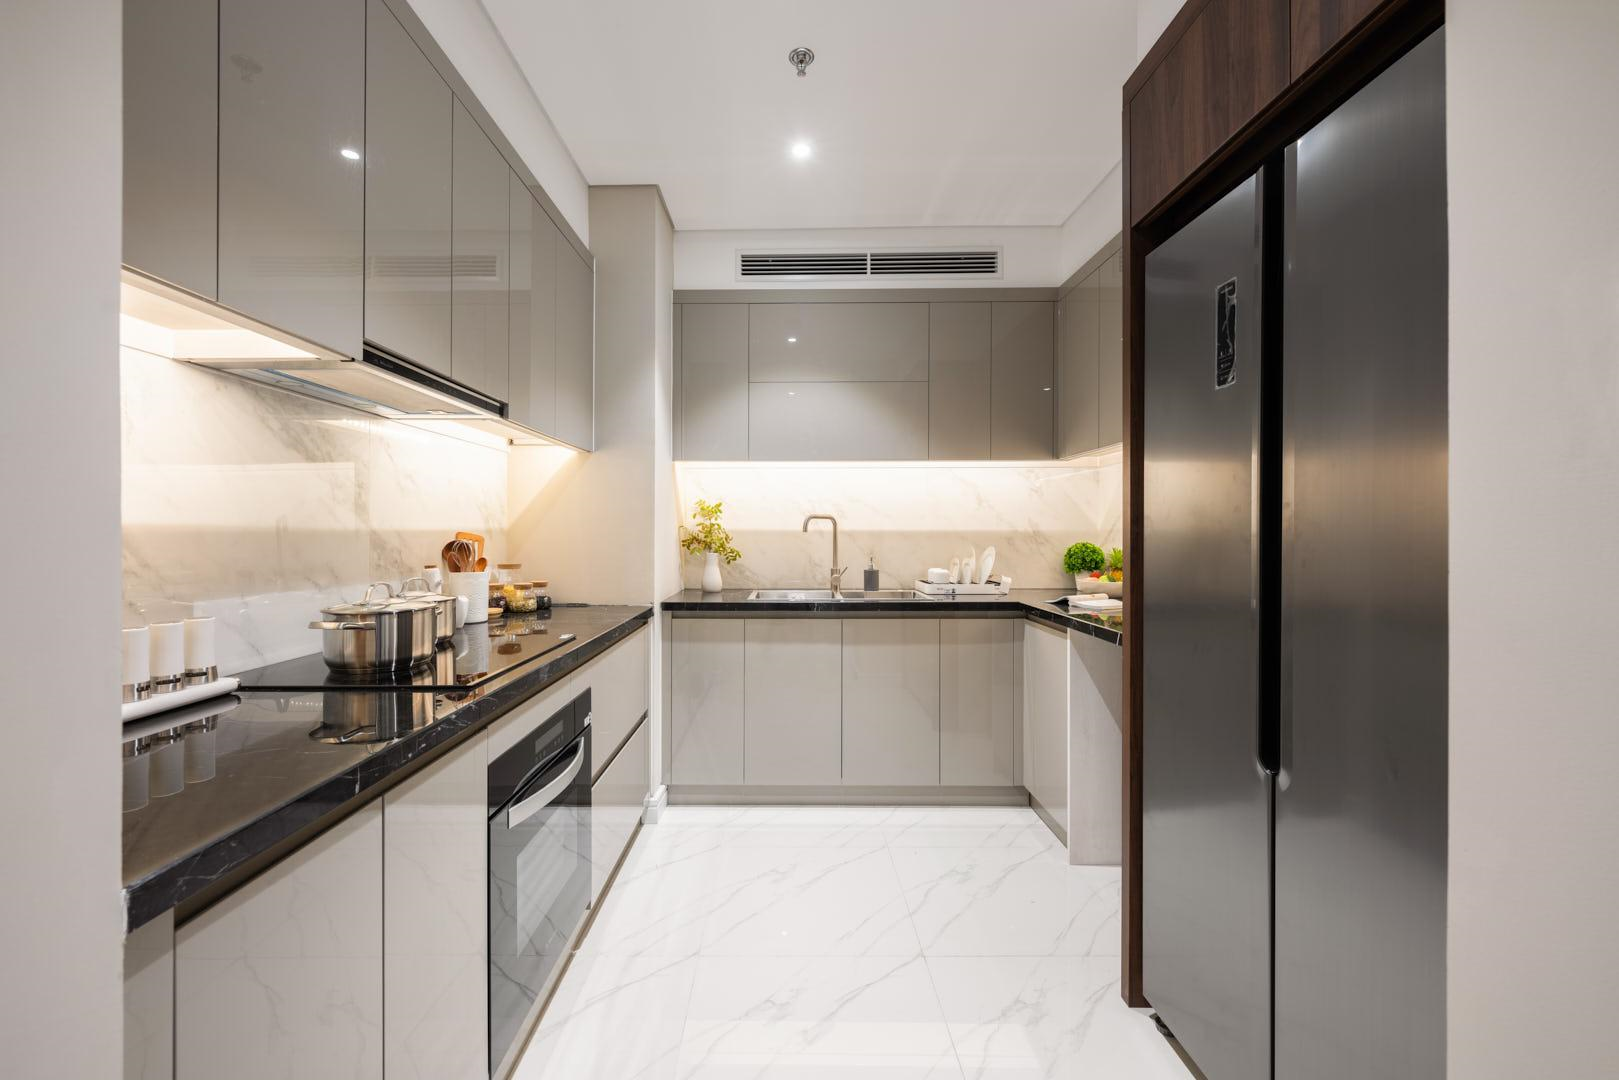 Không gian nhà bếp đặc biệt sang trọng với nội thất cao cấp và tông màu trắng đen hiện đại